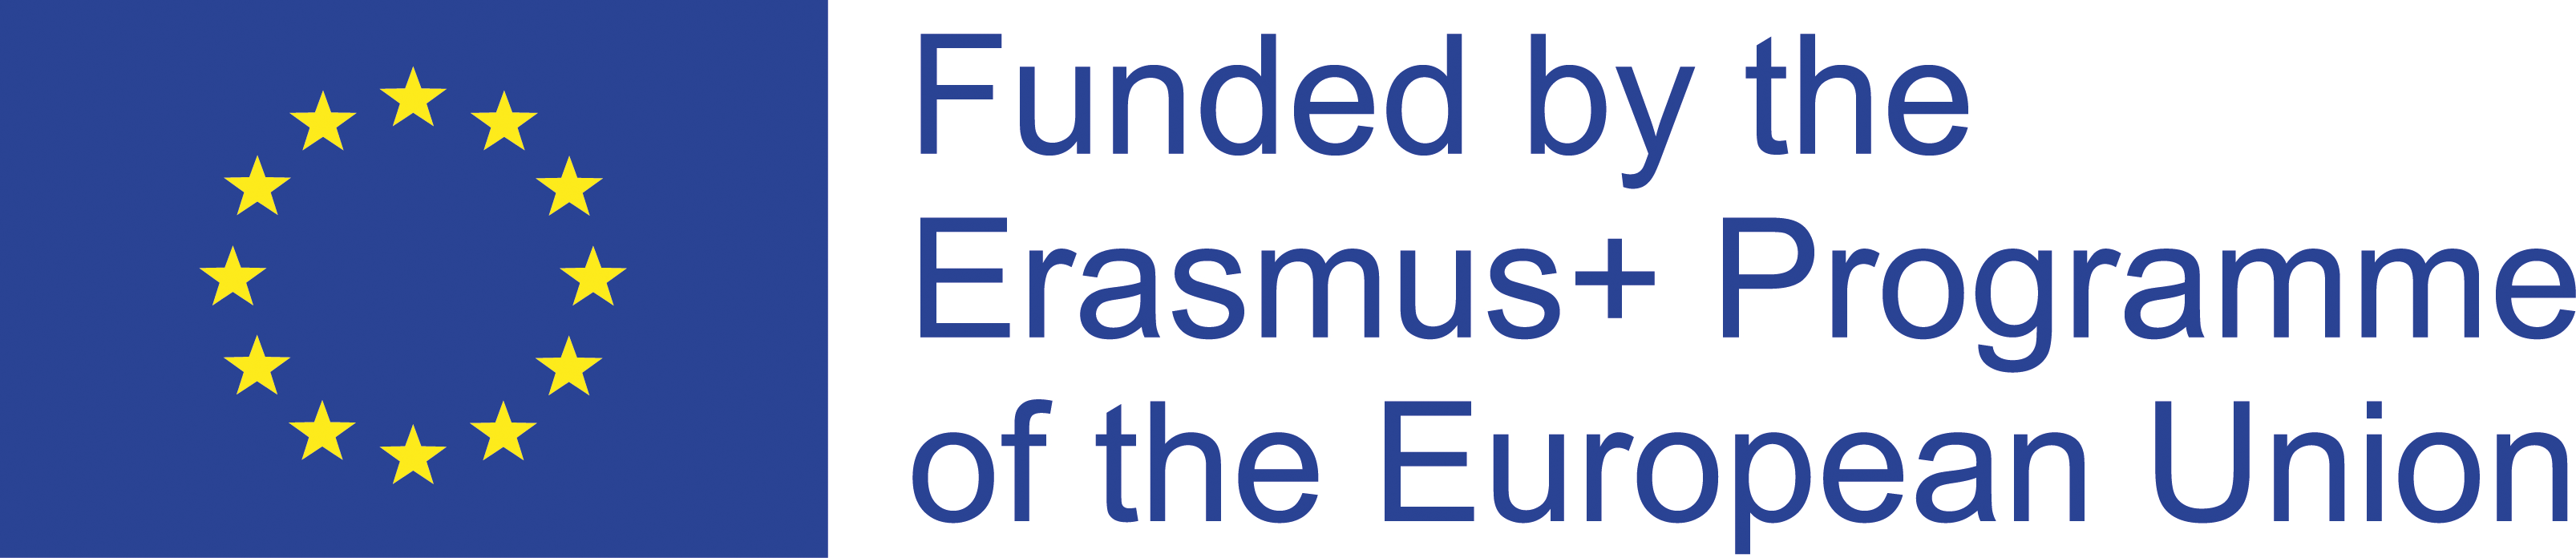 Logo from Erasmus+ Program